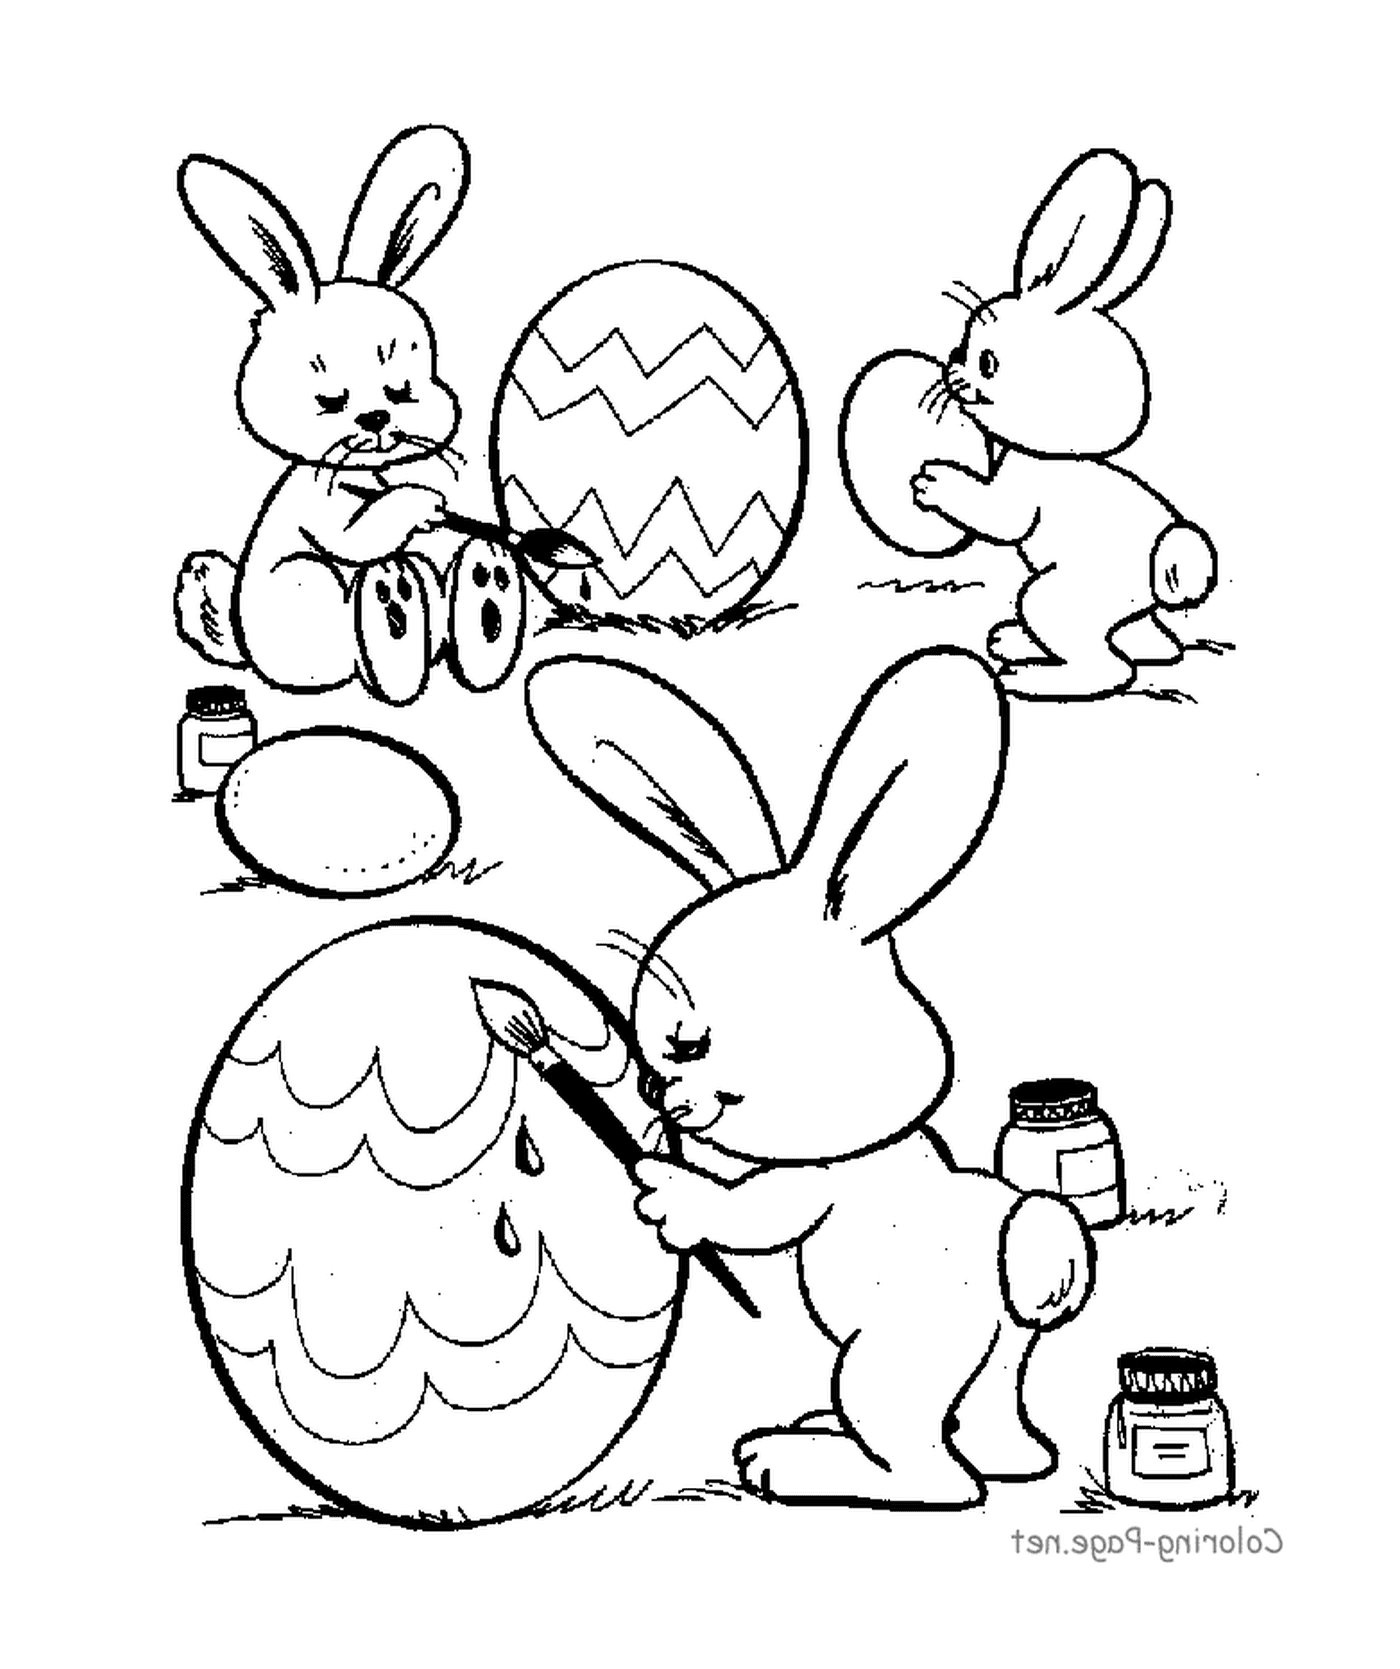  一群兔子在复活节鸡蛋上画画 